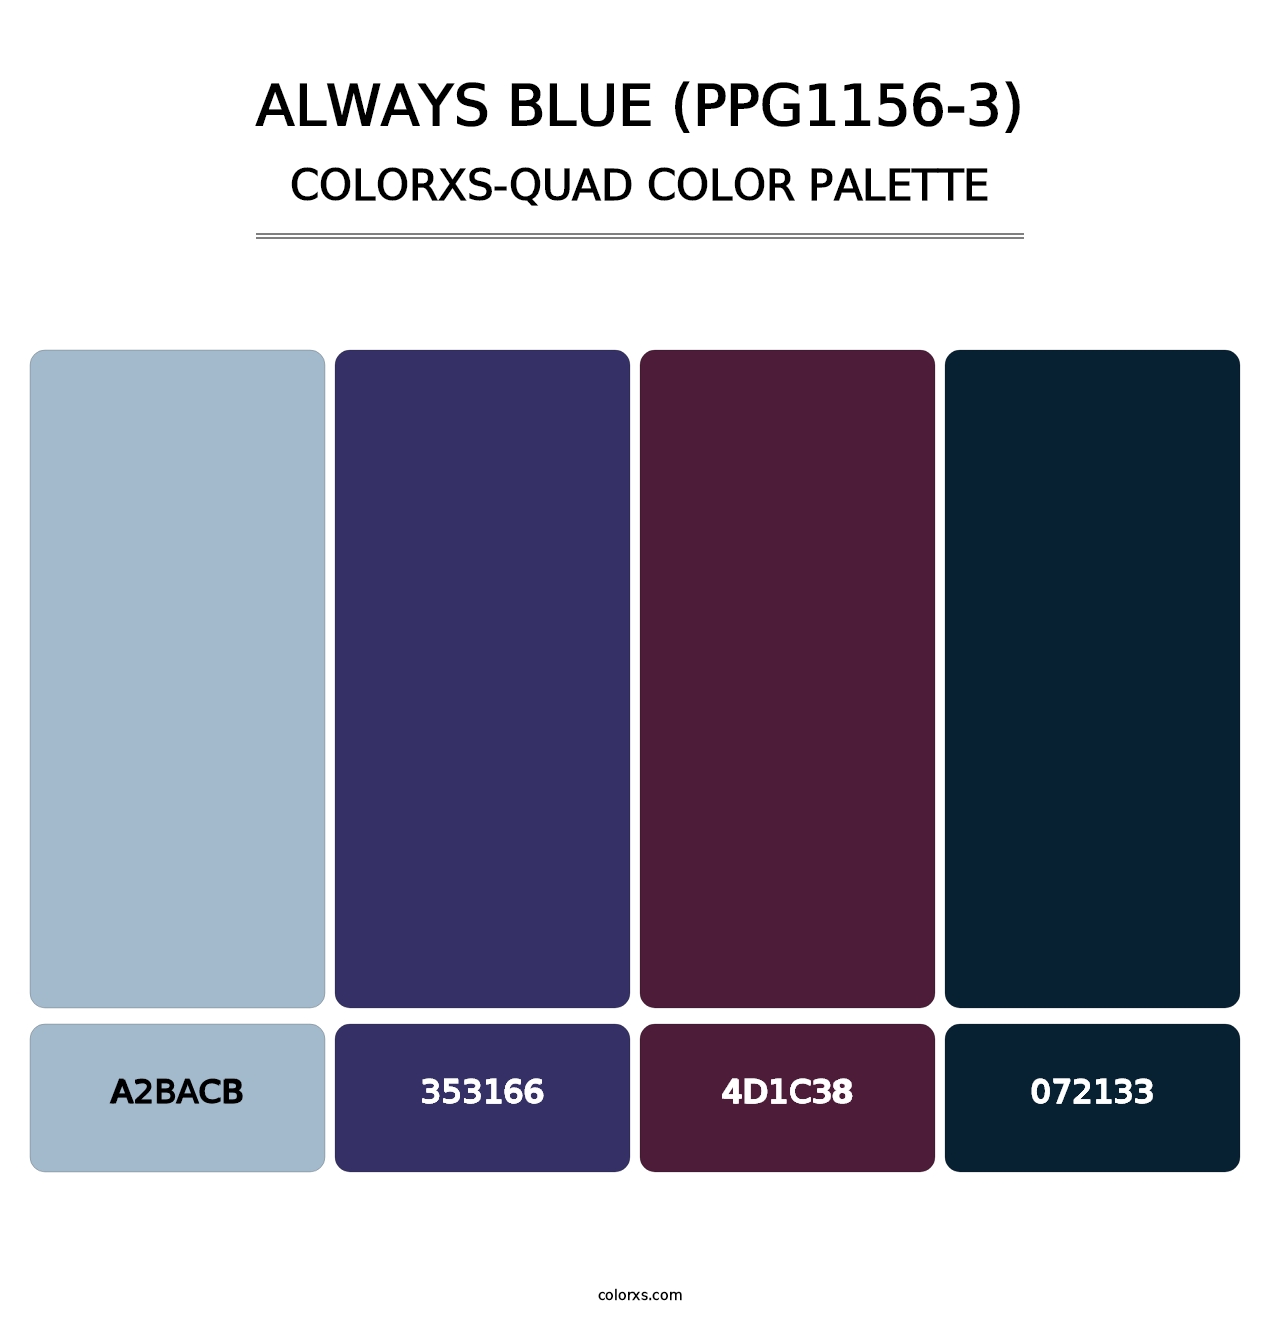 Always Blue (PPG1156-3) - Colorxs Quad Palette